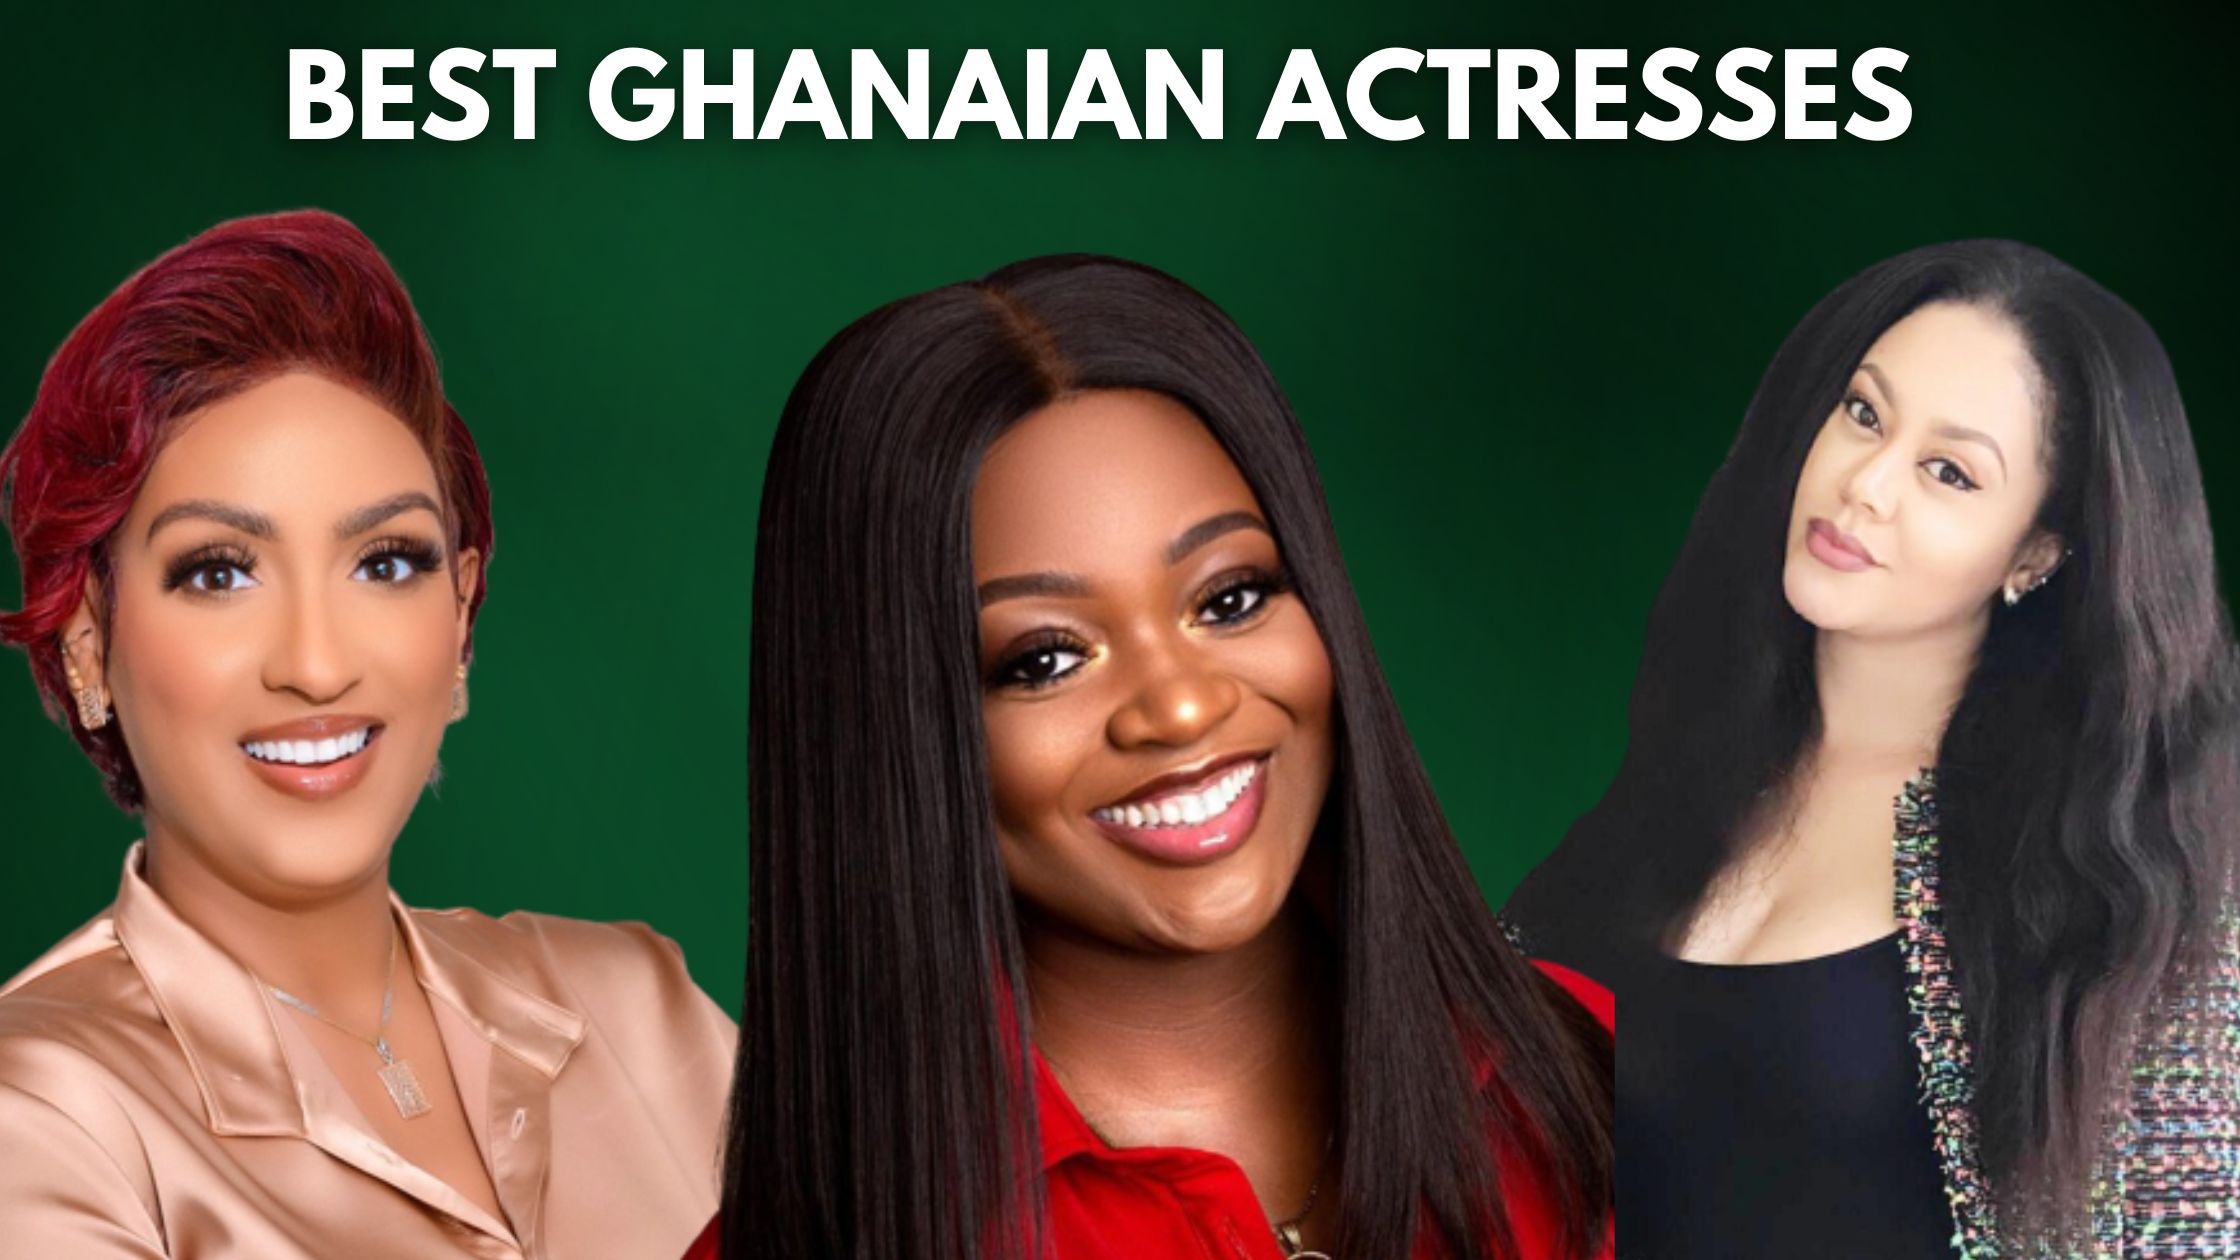 Top 5 Best Ghanaian Actresses